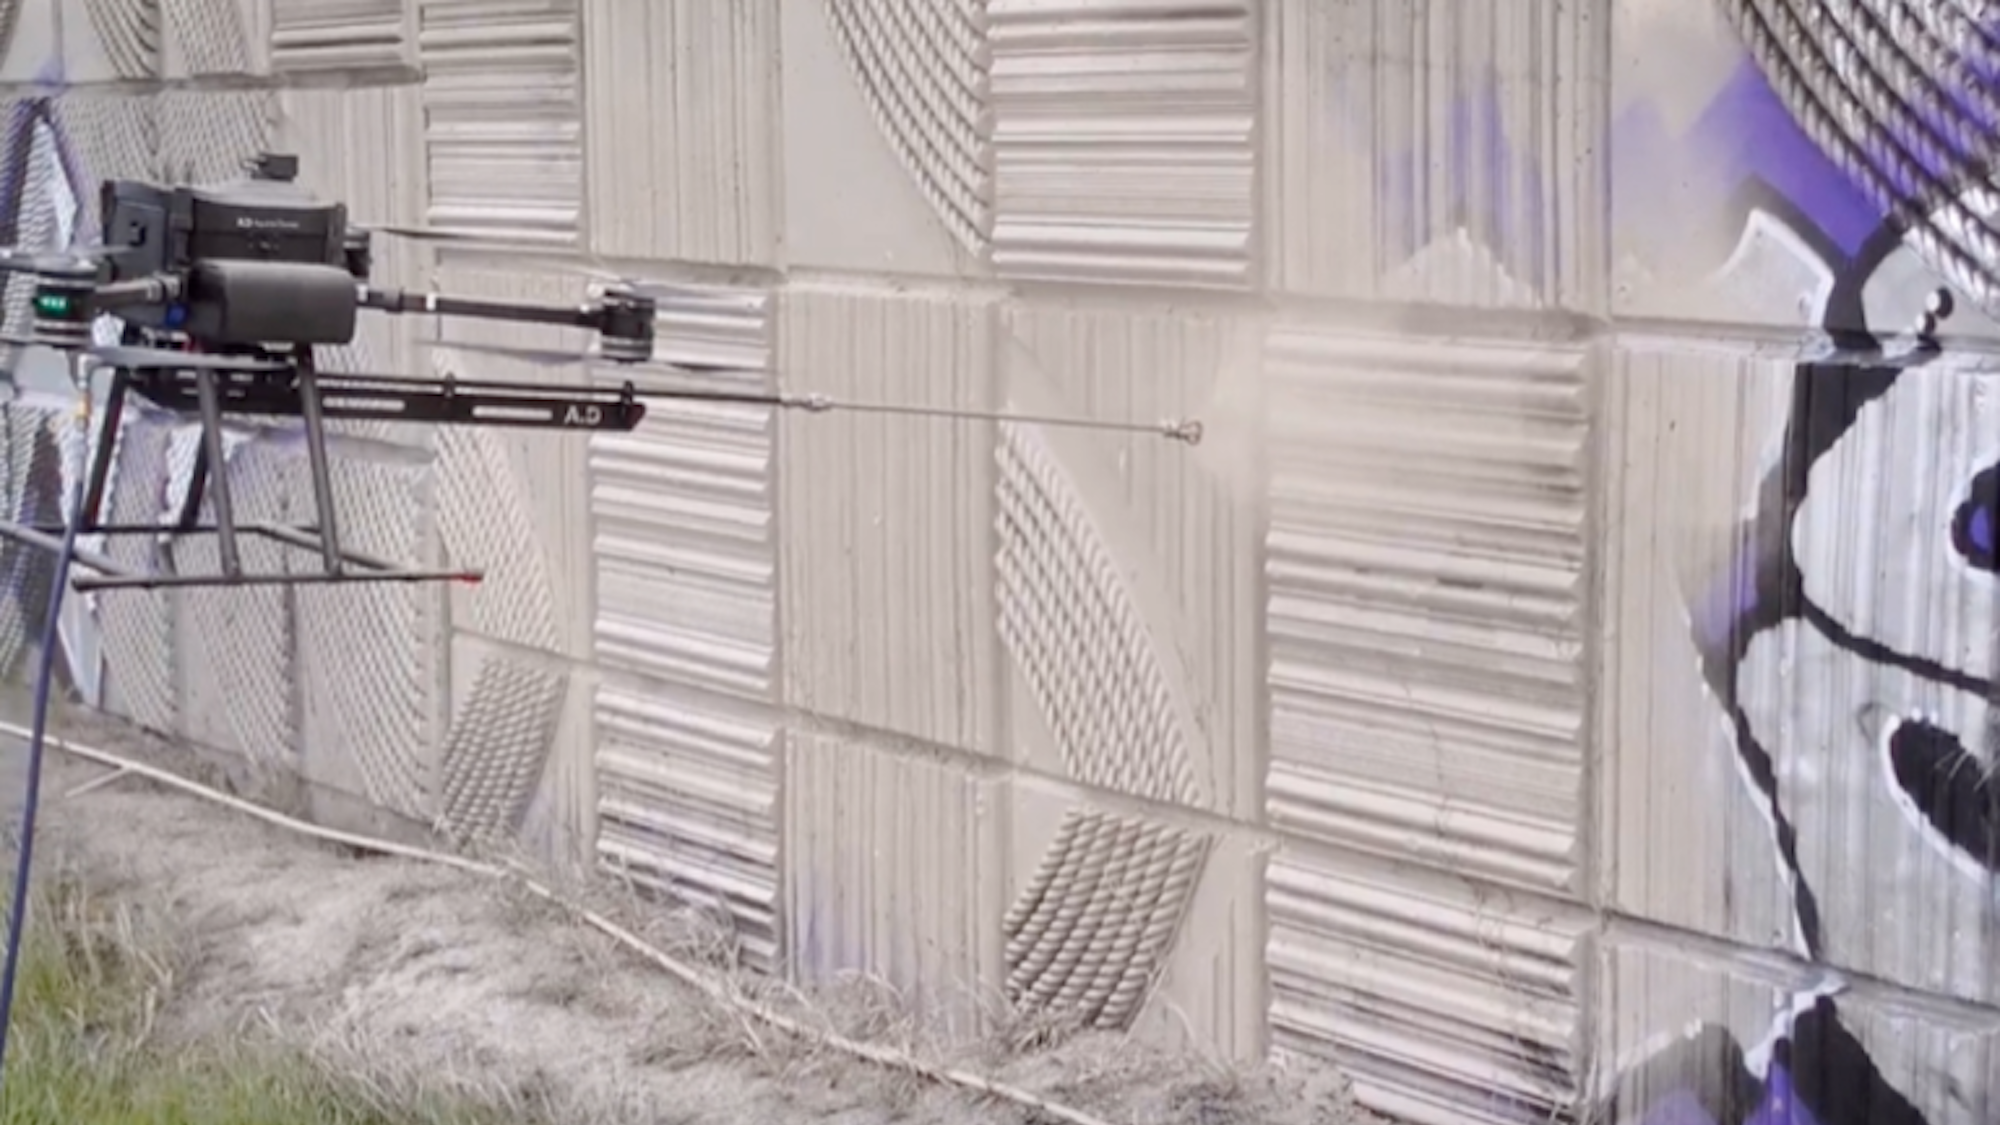 El estado de Washington despliega un dron de 30.000 dólares para combatir el graffiti